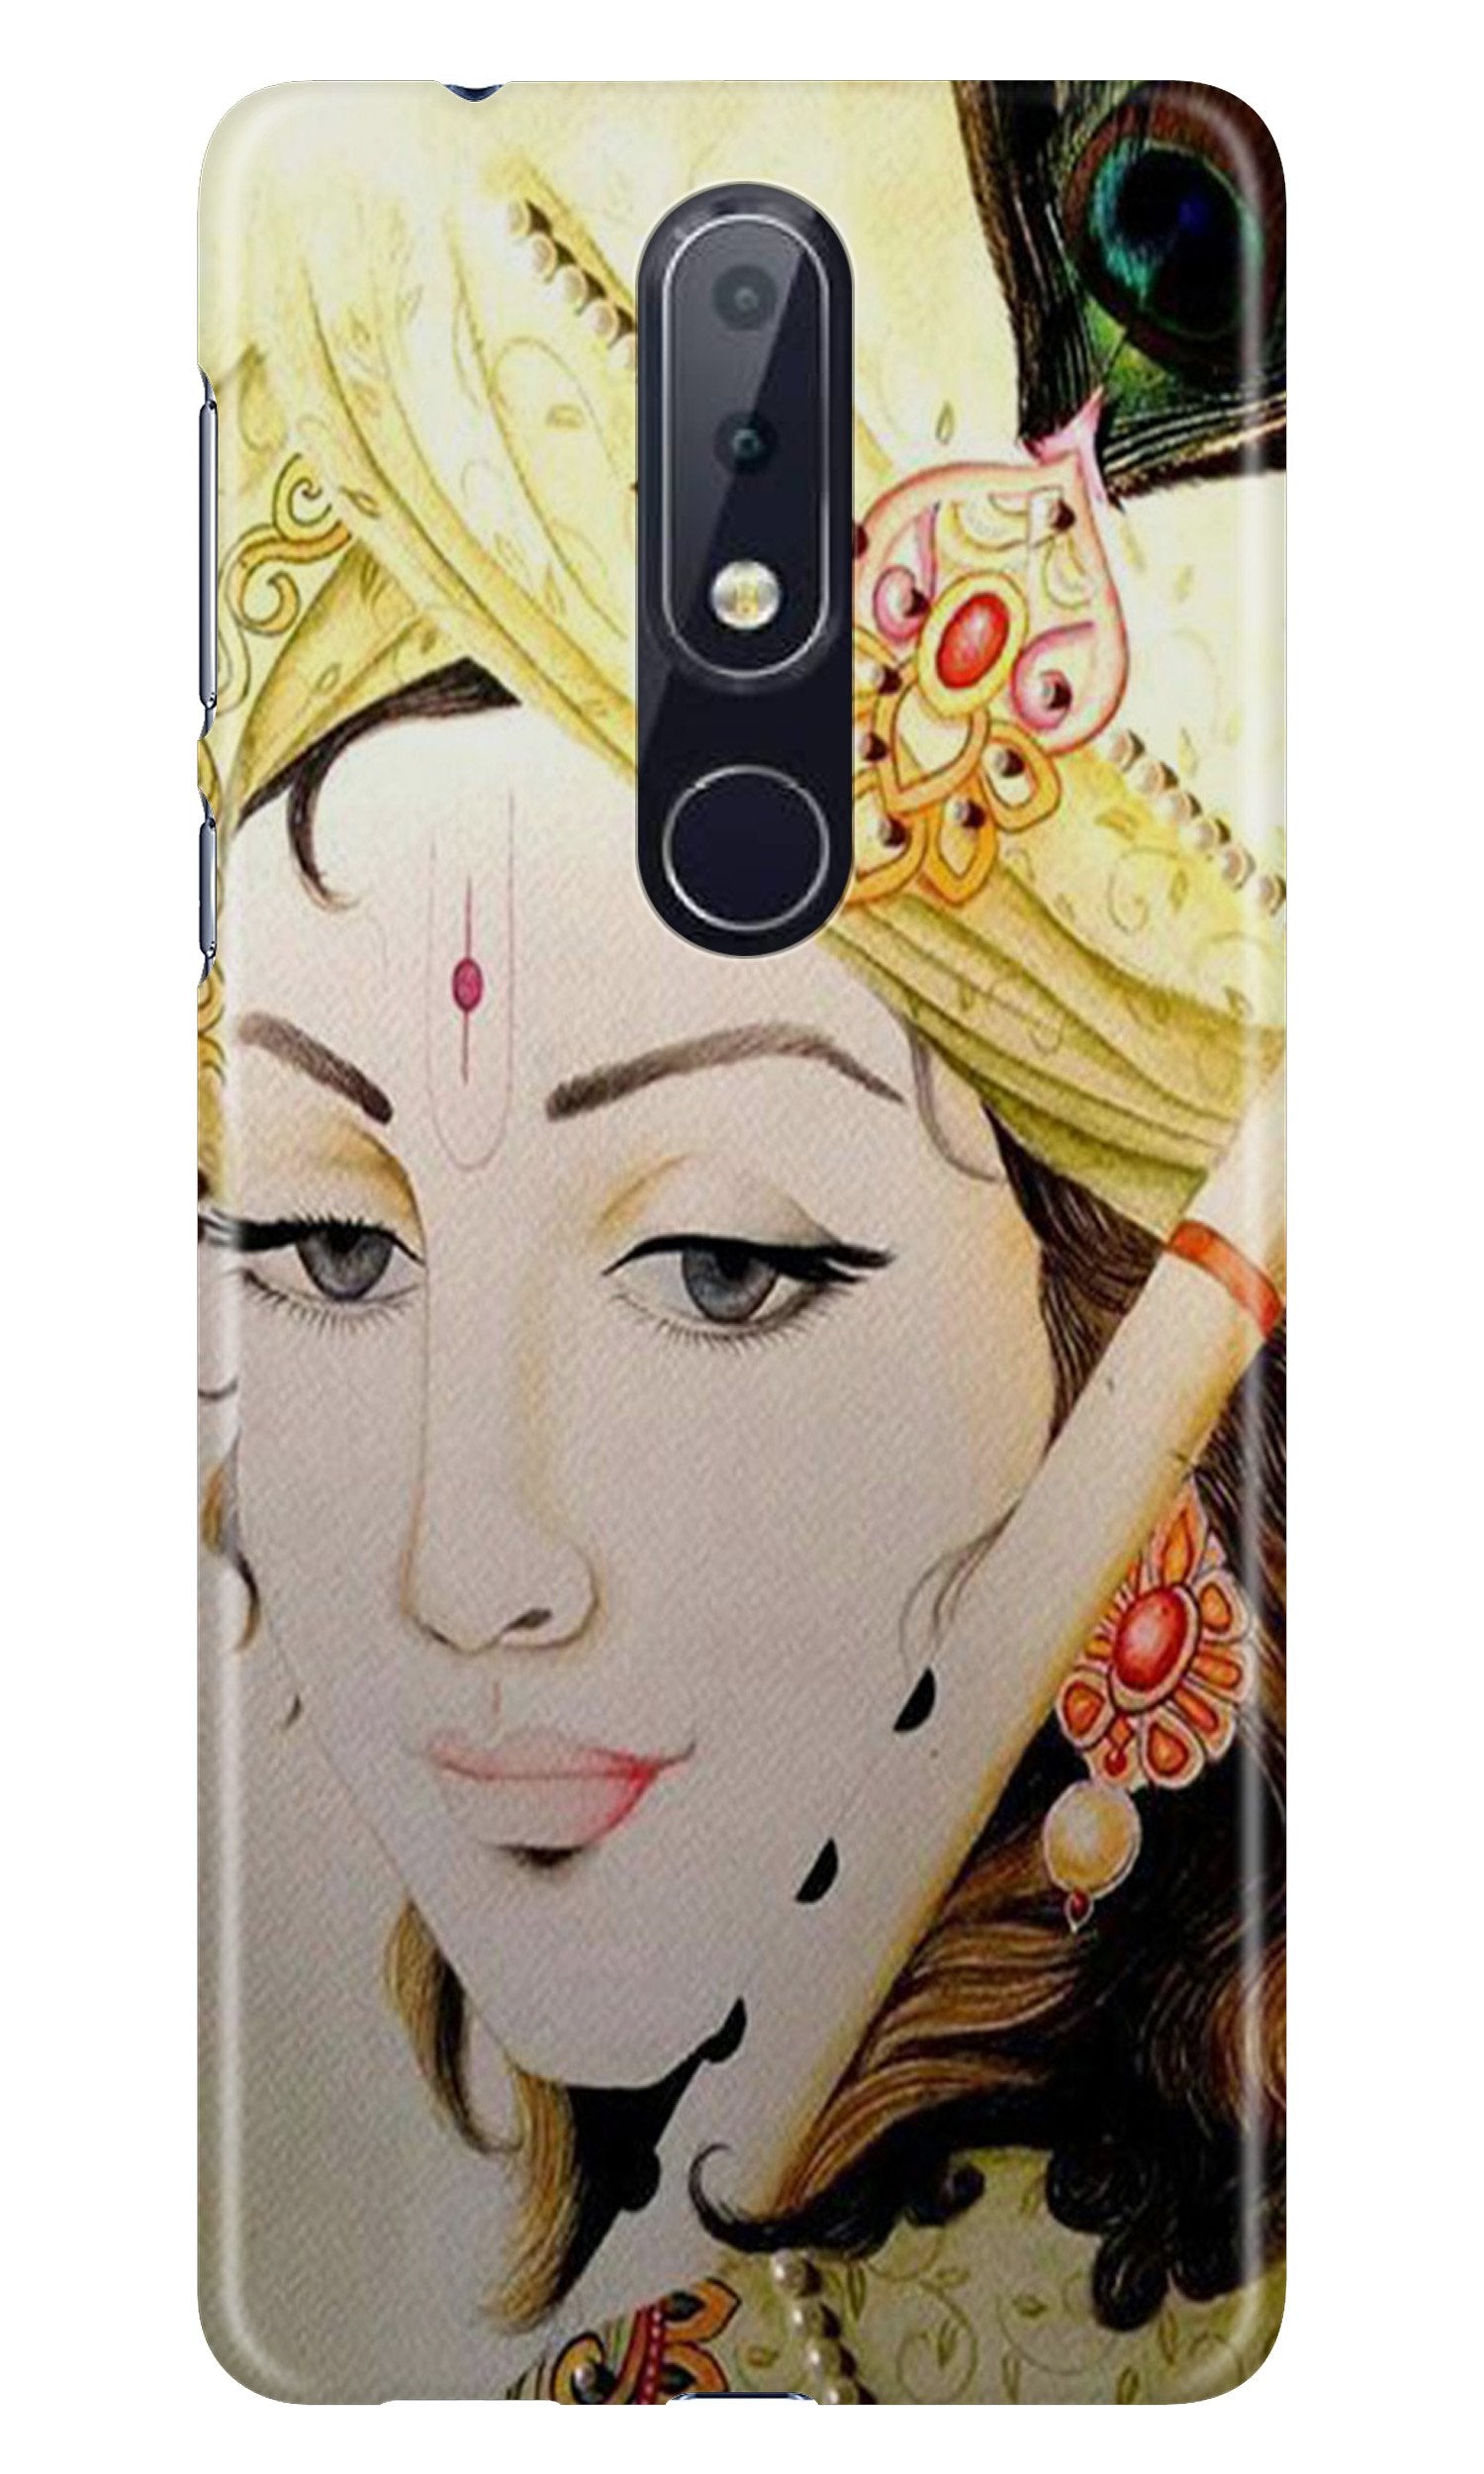 Krishna Case for Nokia 6.1 Plus (Design No. 291)